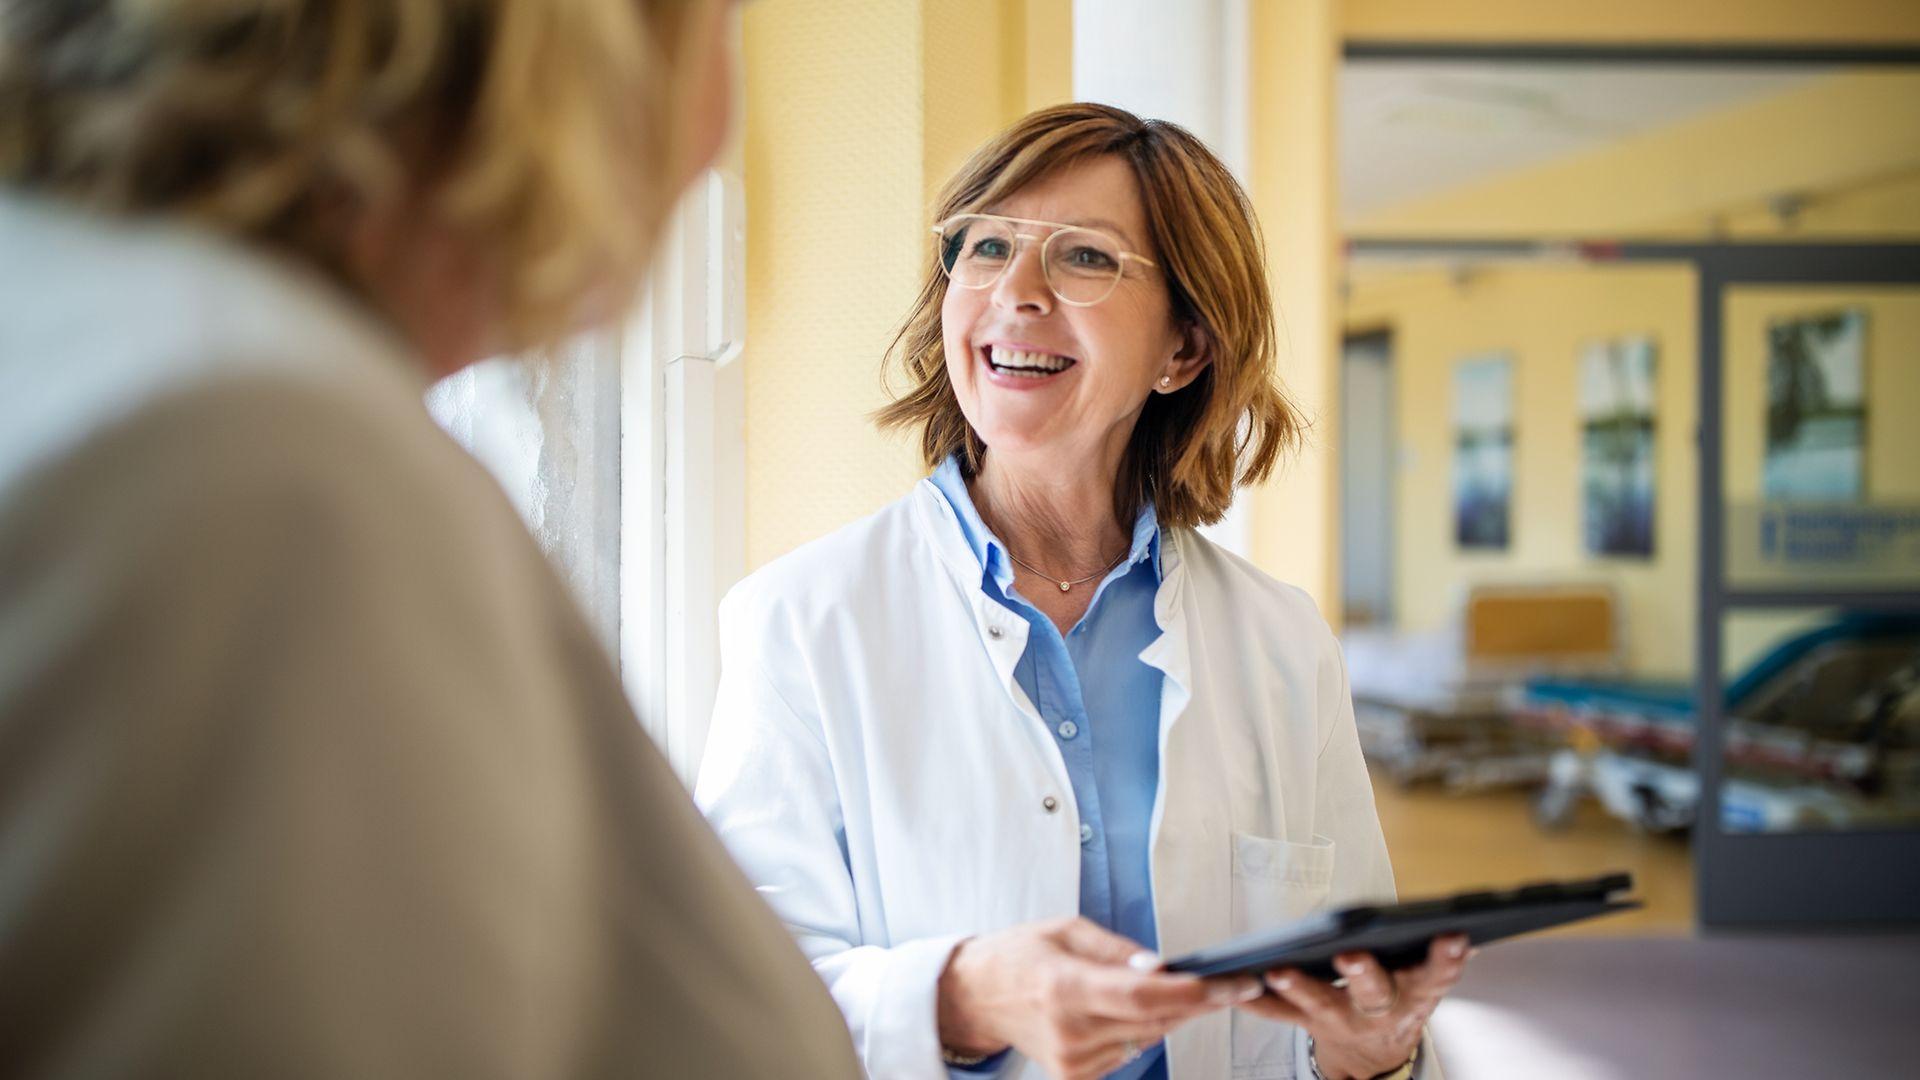 Bild: Ärztin mit Brille und Klemmbrett lächelt ihre Patientin an.